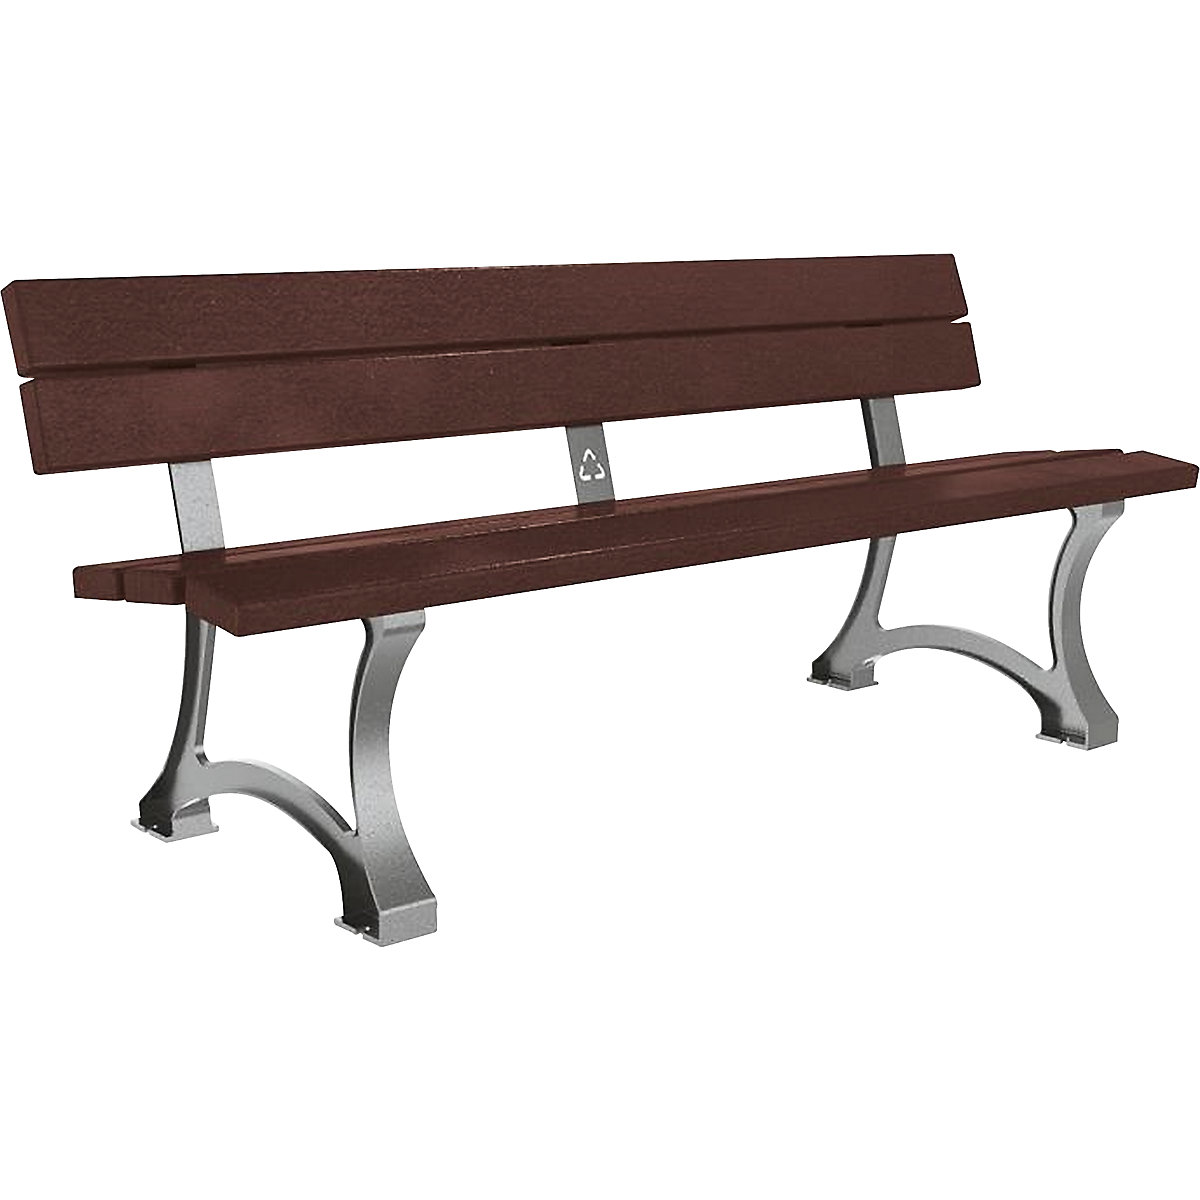 MORA bench – PROCITY